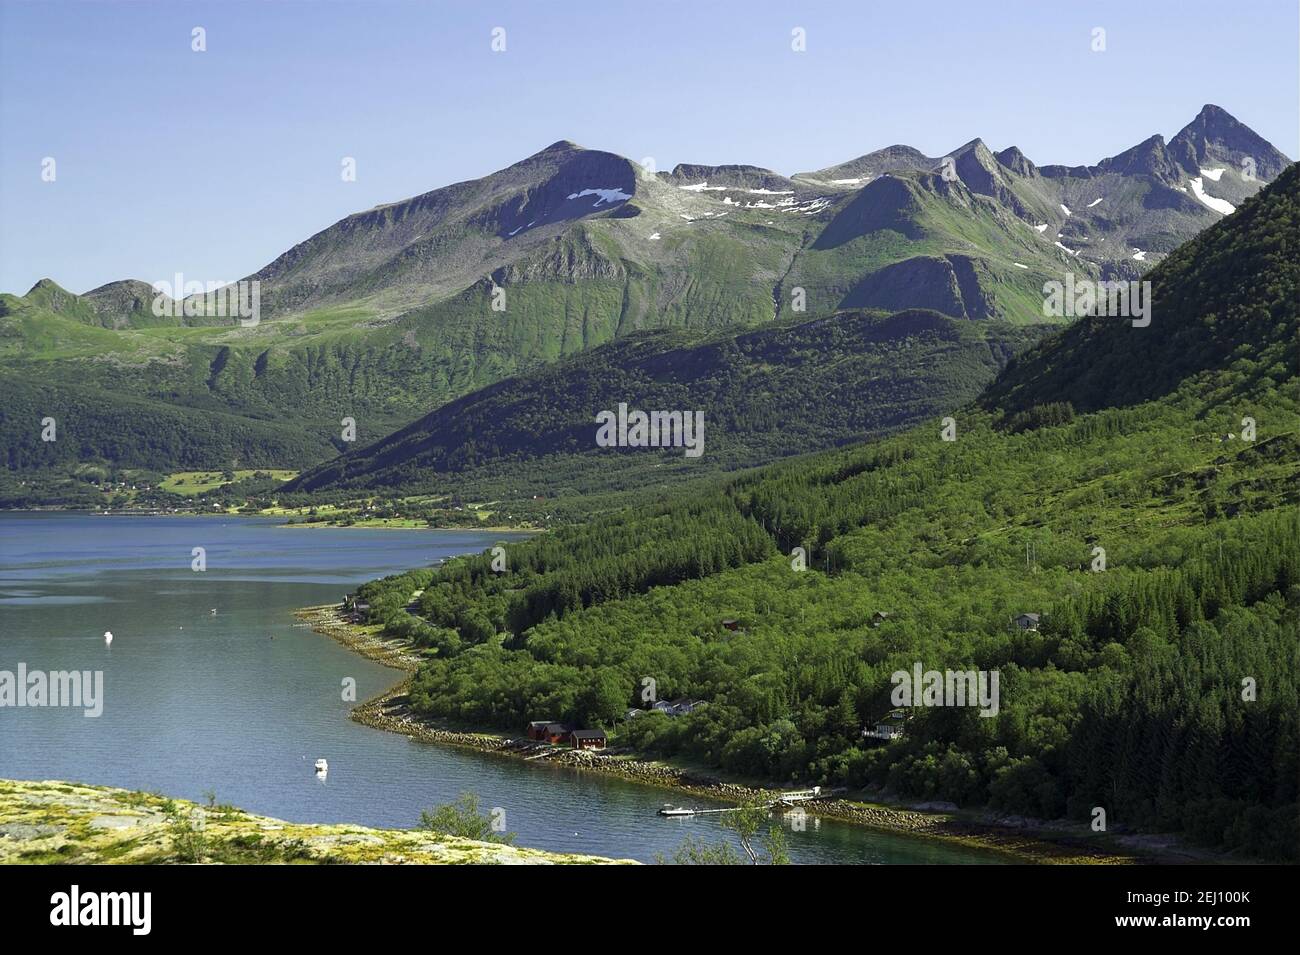 Norvegia, Norvegia; Montagne Rocciose e il mare - un tipico paesaggio estivo nel nord della Norvegia dietro il Circolo polare Artico. Foto Stock